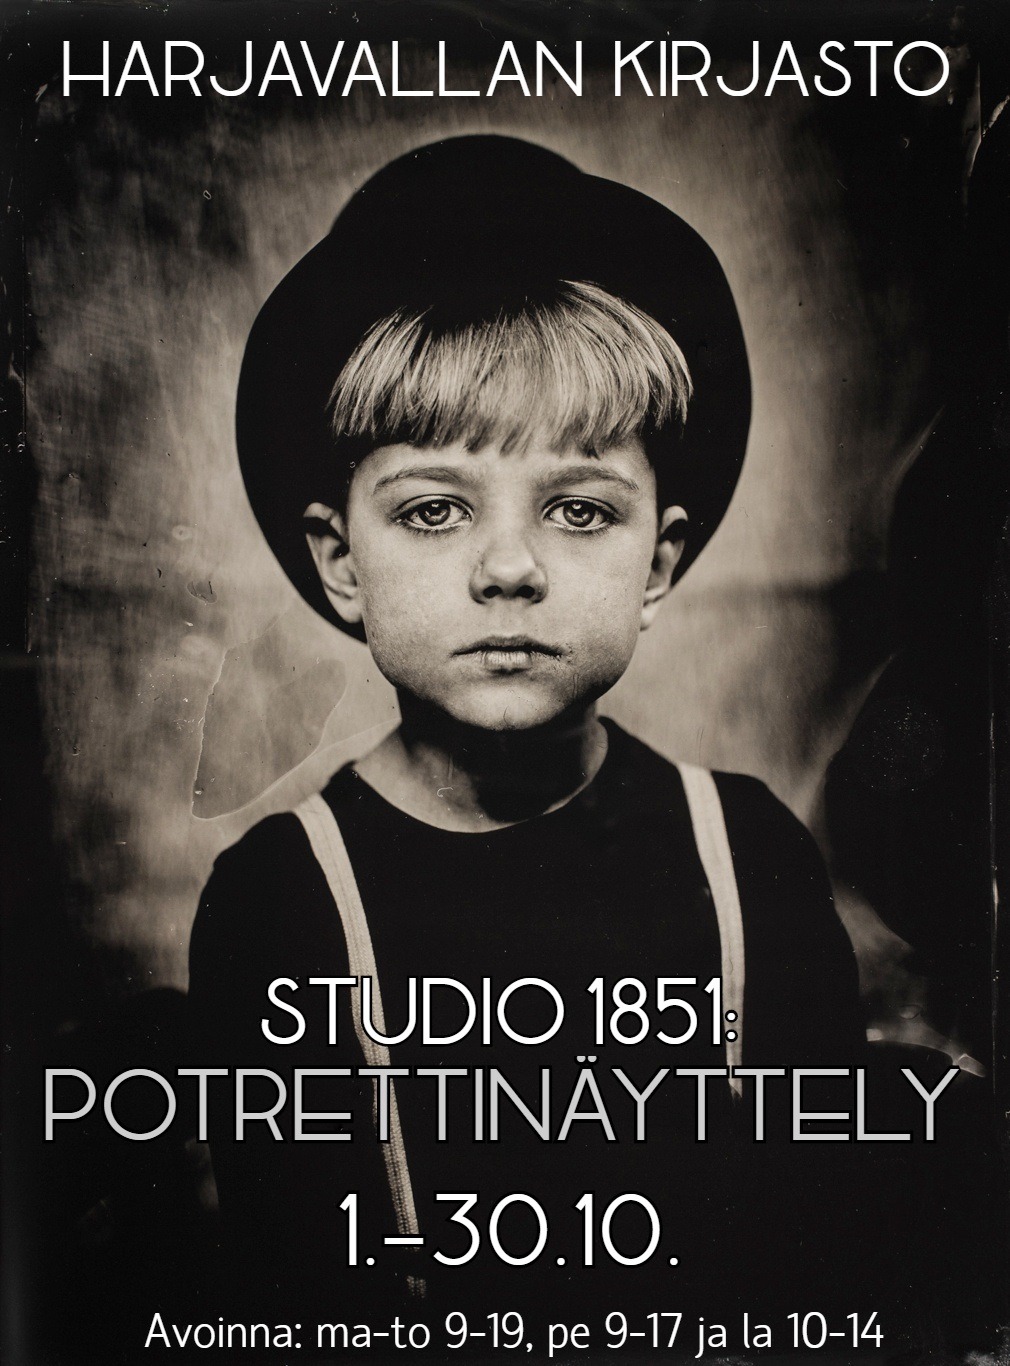 Studio 1851: Potrettinäyttely - Harjavallan kaupunki